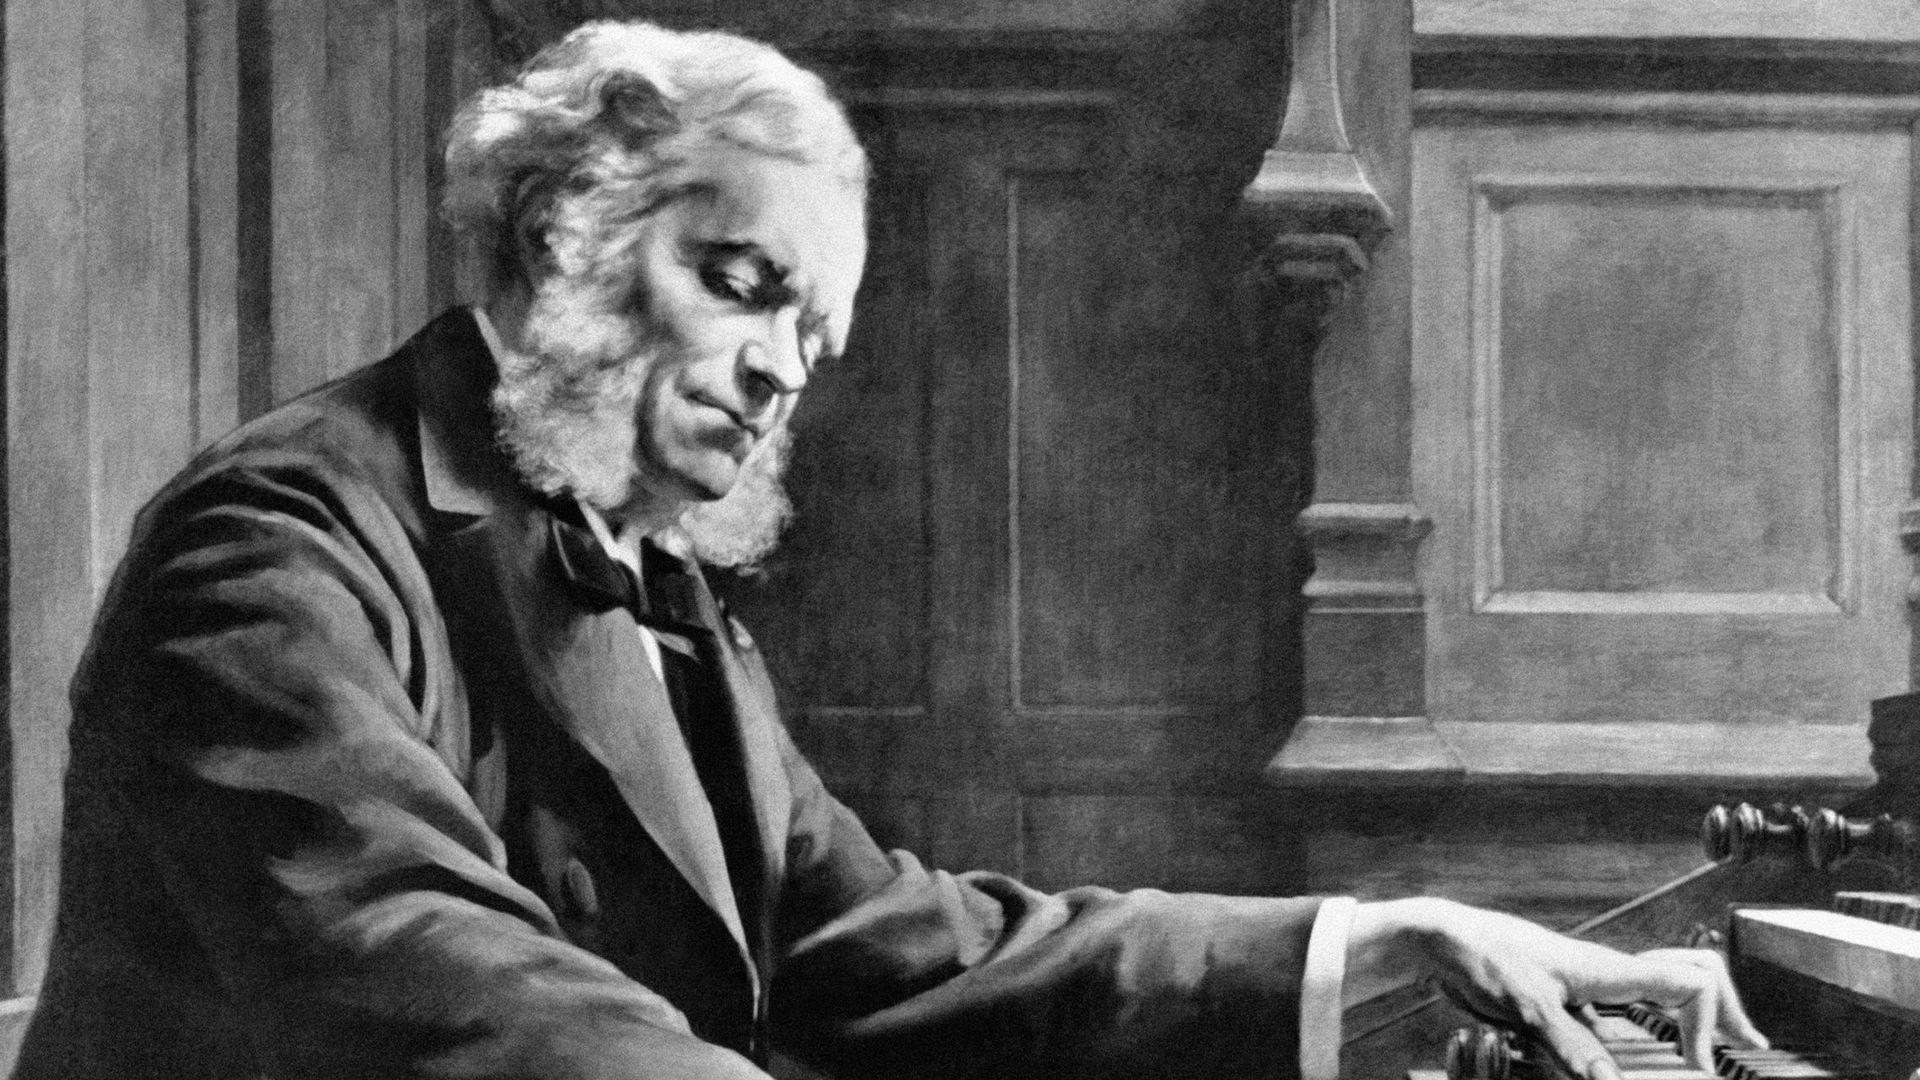 Ce 8 novembre 2020, nous commémorions les 130 ans de sa mort du compositeur et organiste César Franck.